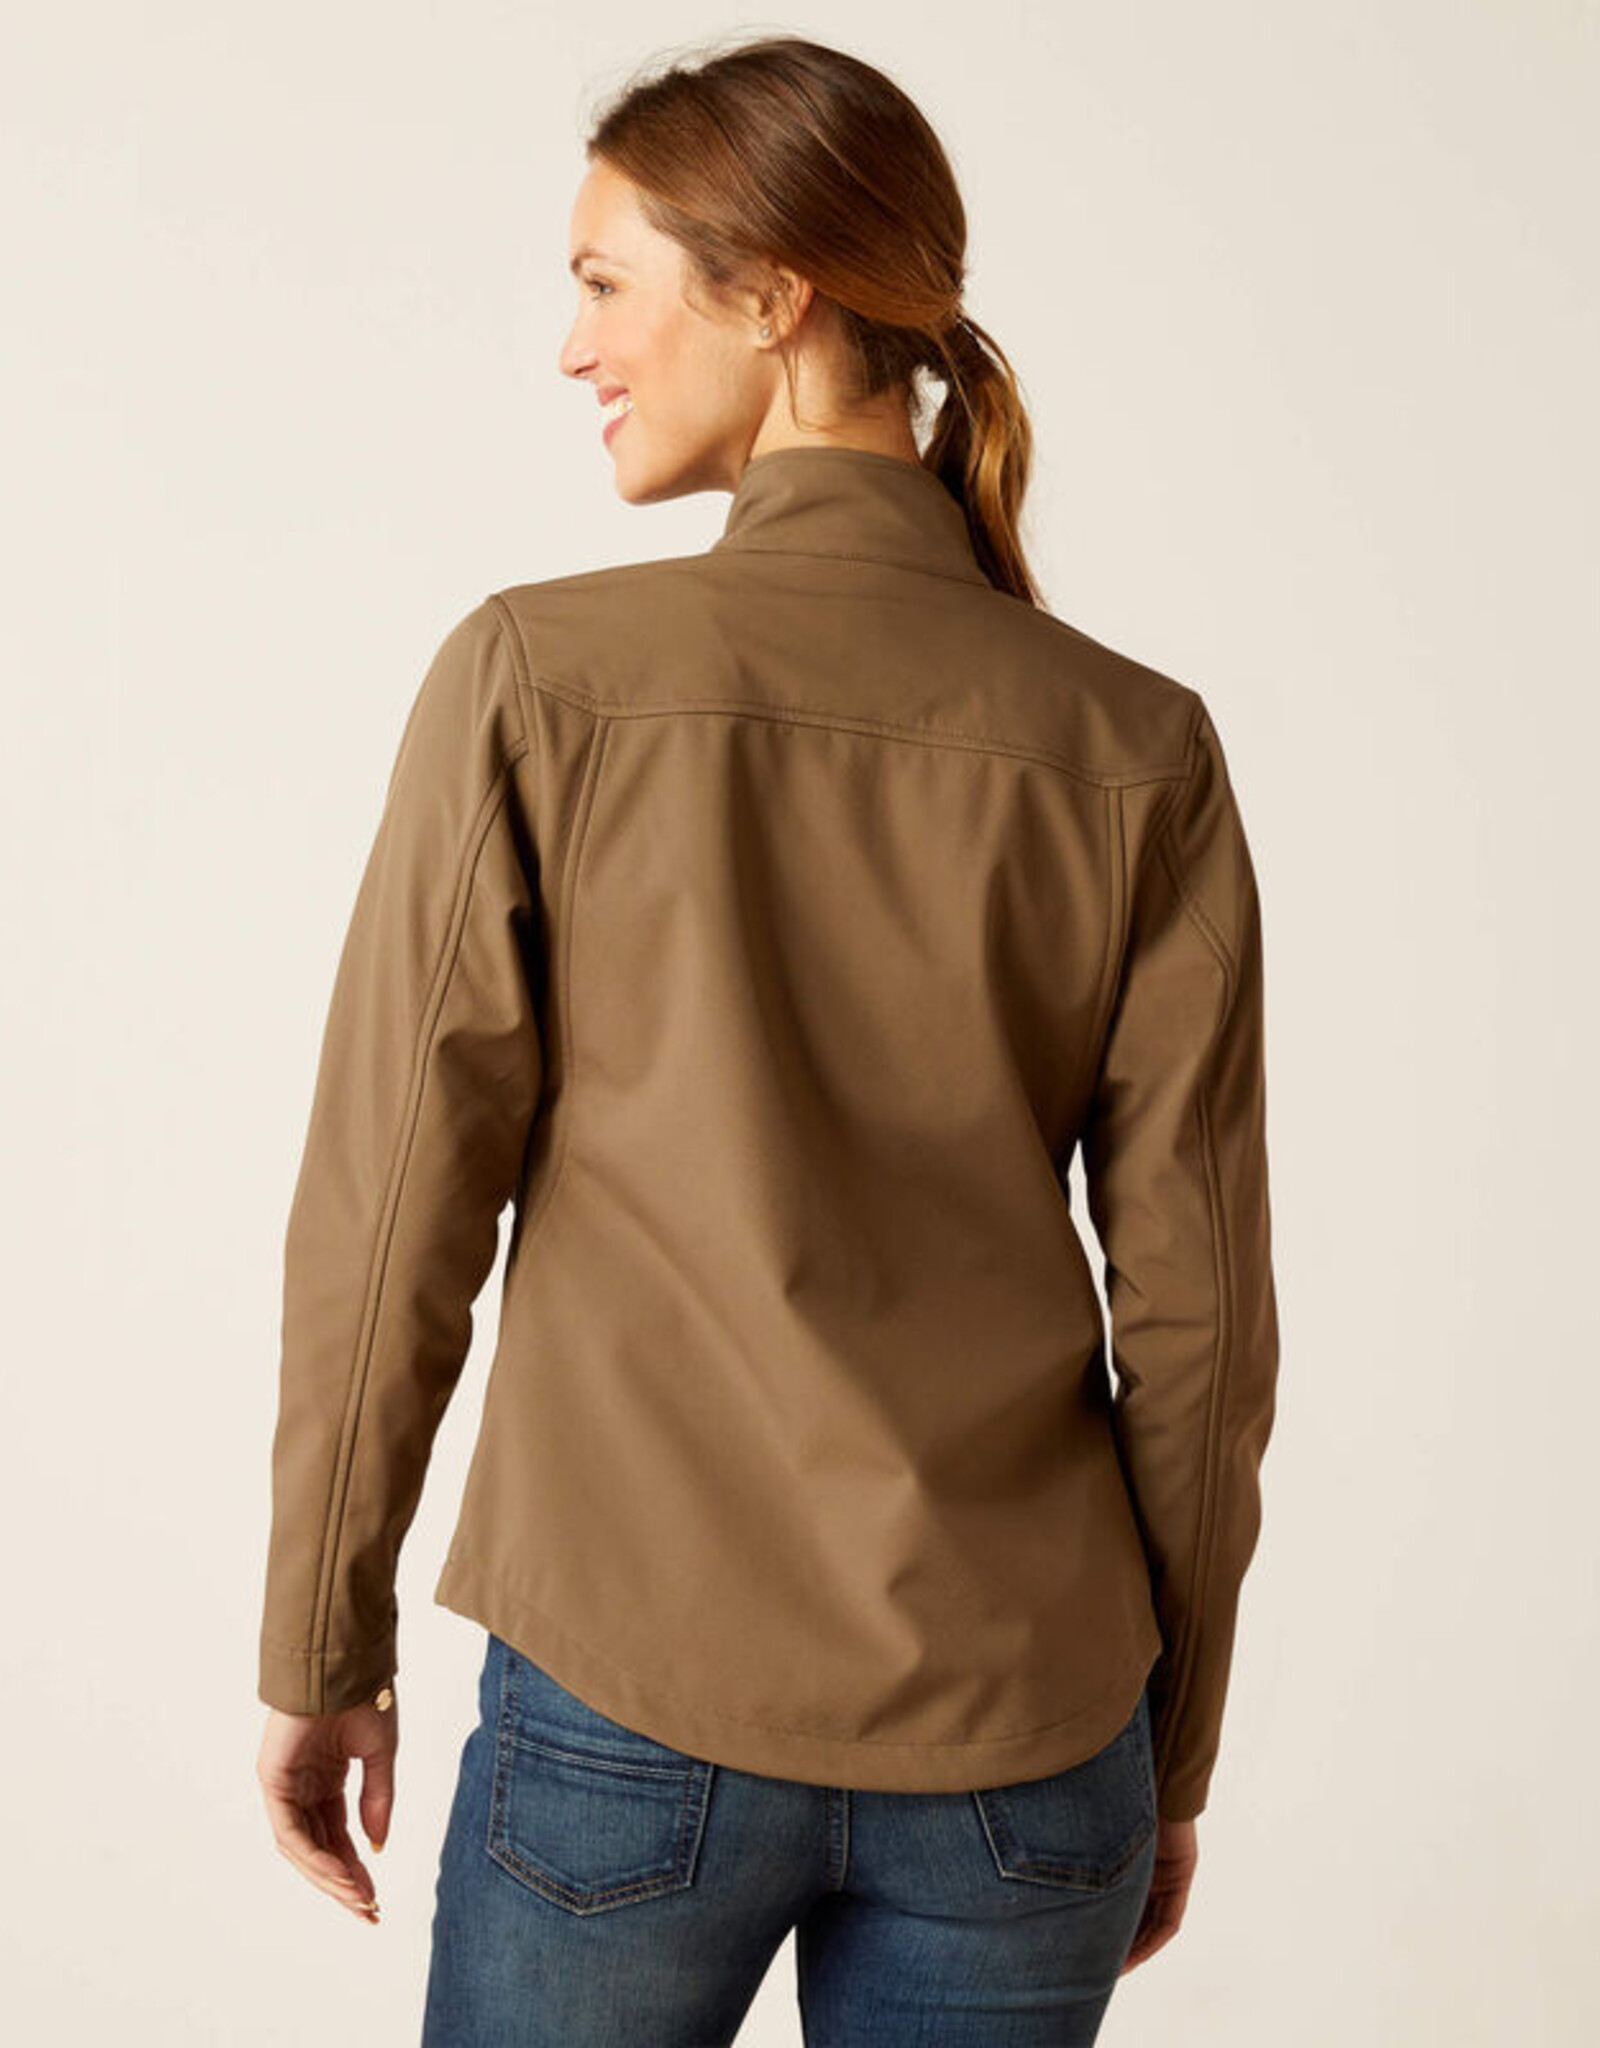 Calabasas Saddlery - Ariat Ladies' Agile Softshell Jacket - Calabasas  Saddlery